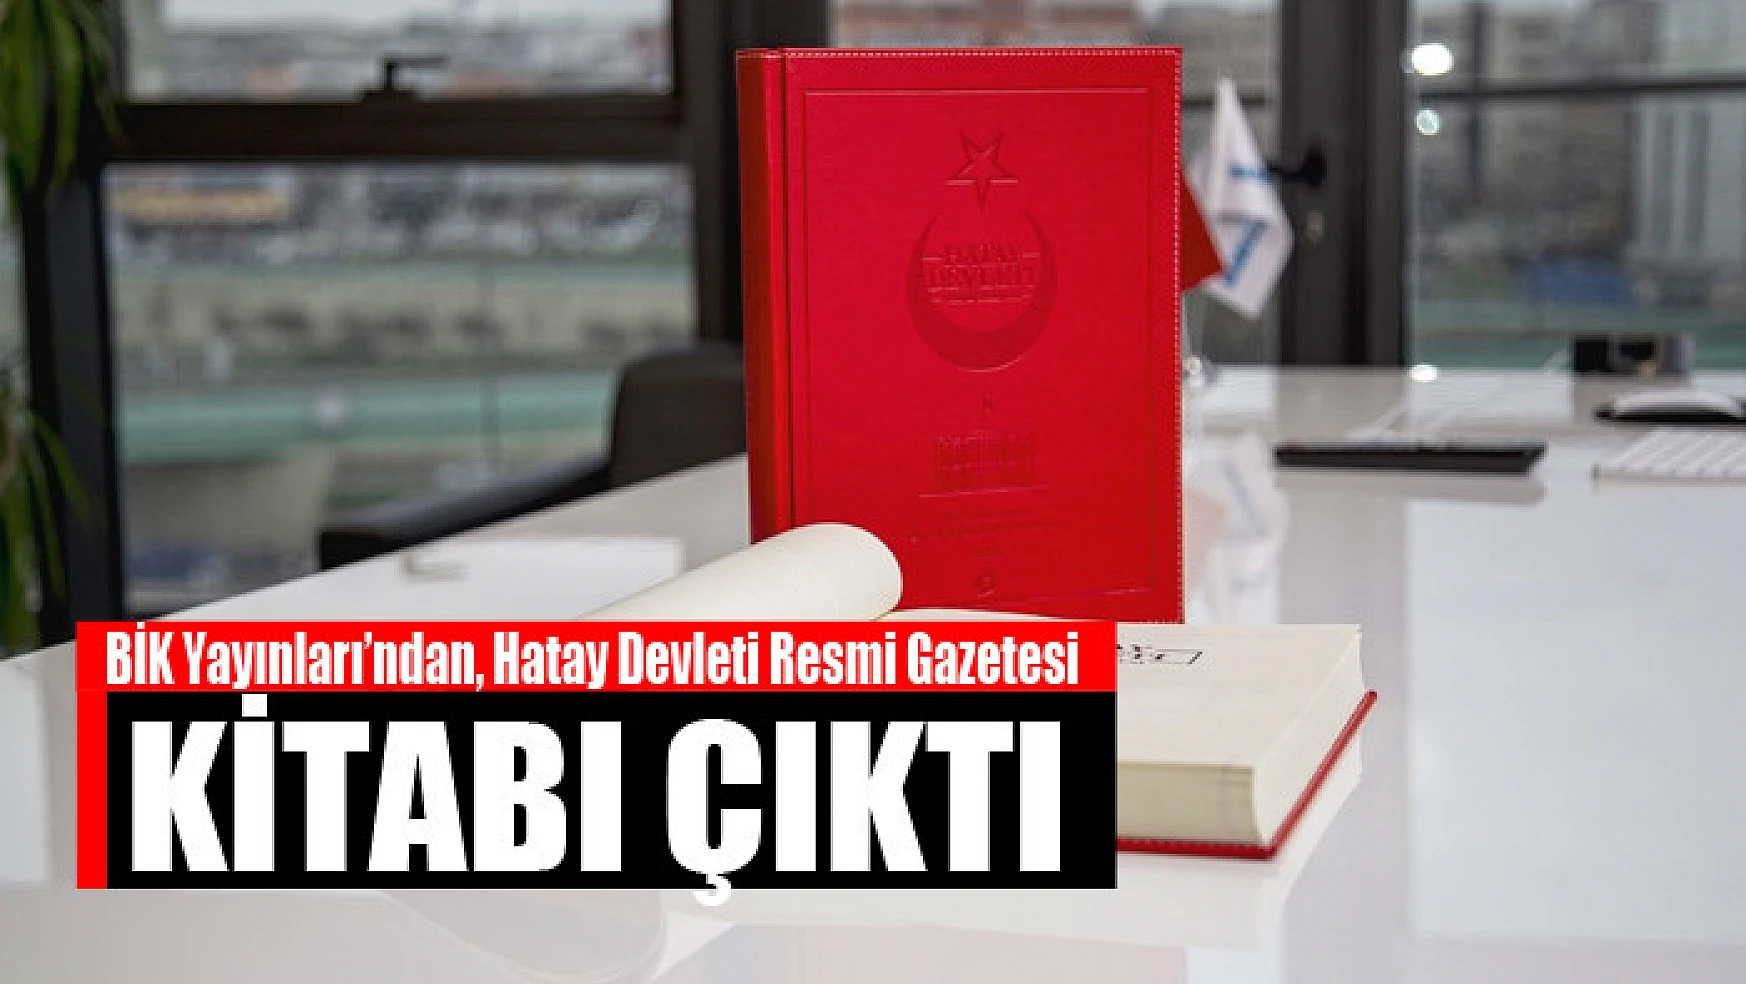 Basın İlan Kurumu Yayınları'ndan, Hatay Devleti Resmi Gazetesi kitabı çıktı